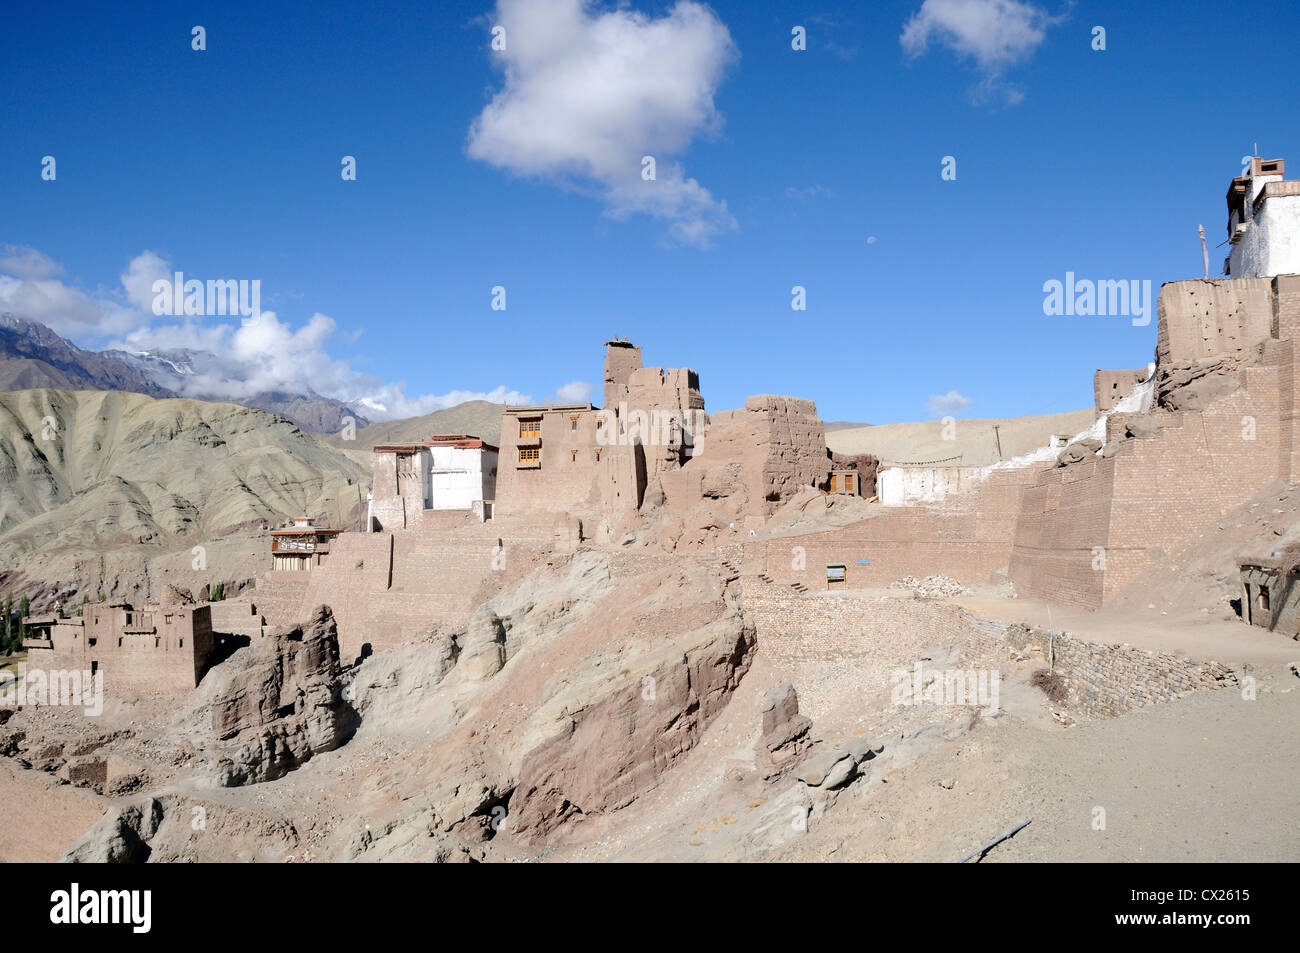 La rovina del XVI secolo il palazzo reale e la fortezza di Basgo con il bianco Chamba Lhakhang tempio. Basgo, Ladakh, India Foto Stock